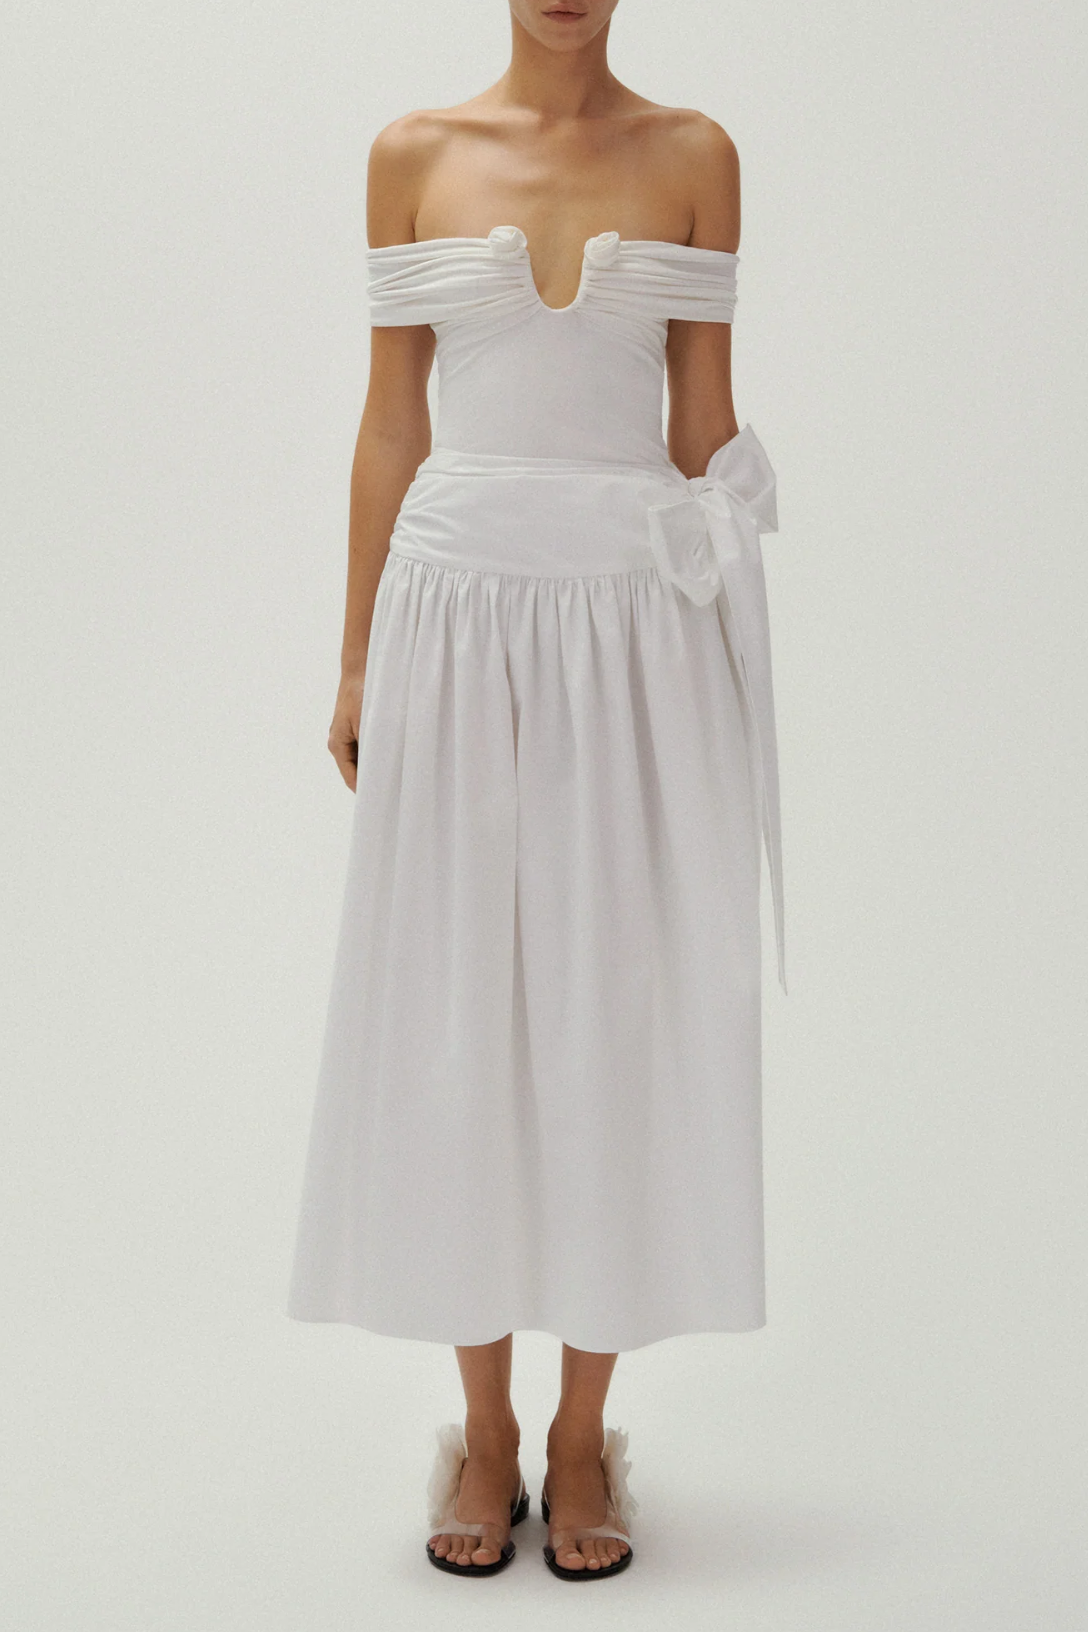 Cotton Tie Skirt | White – Valentines Austin